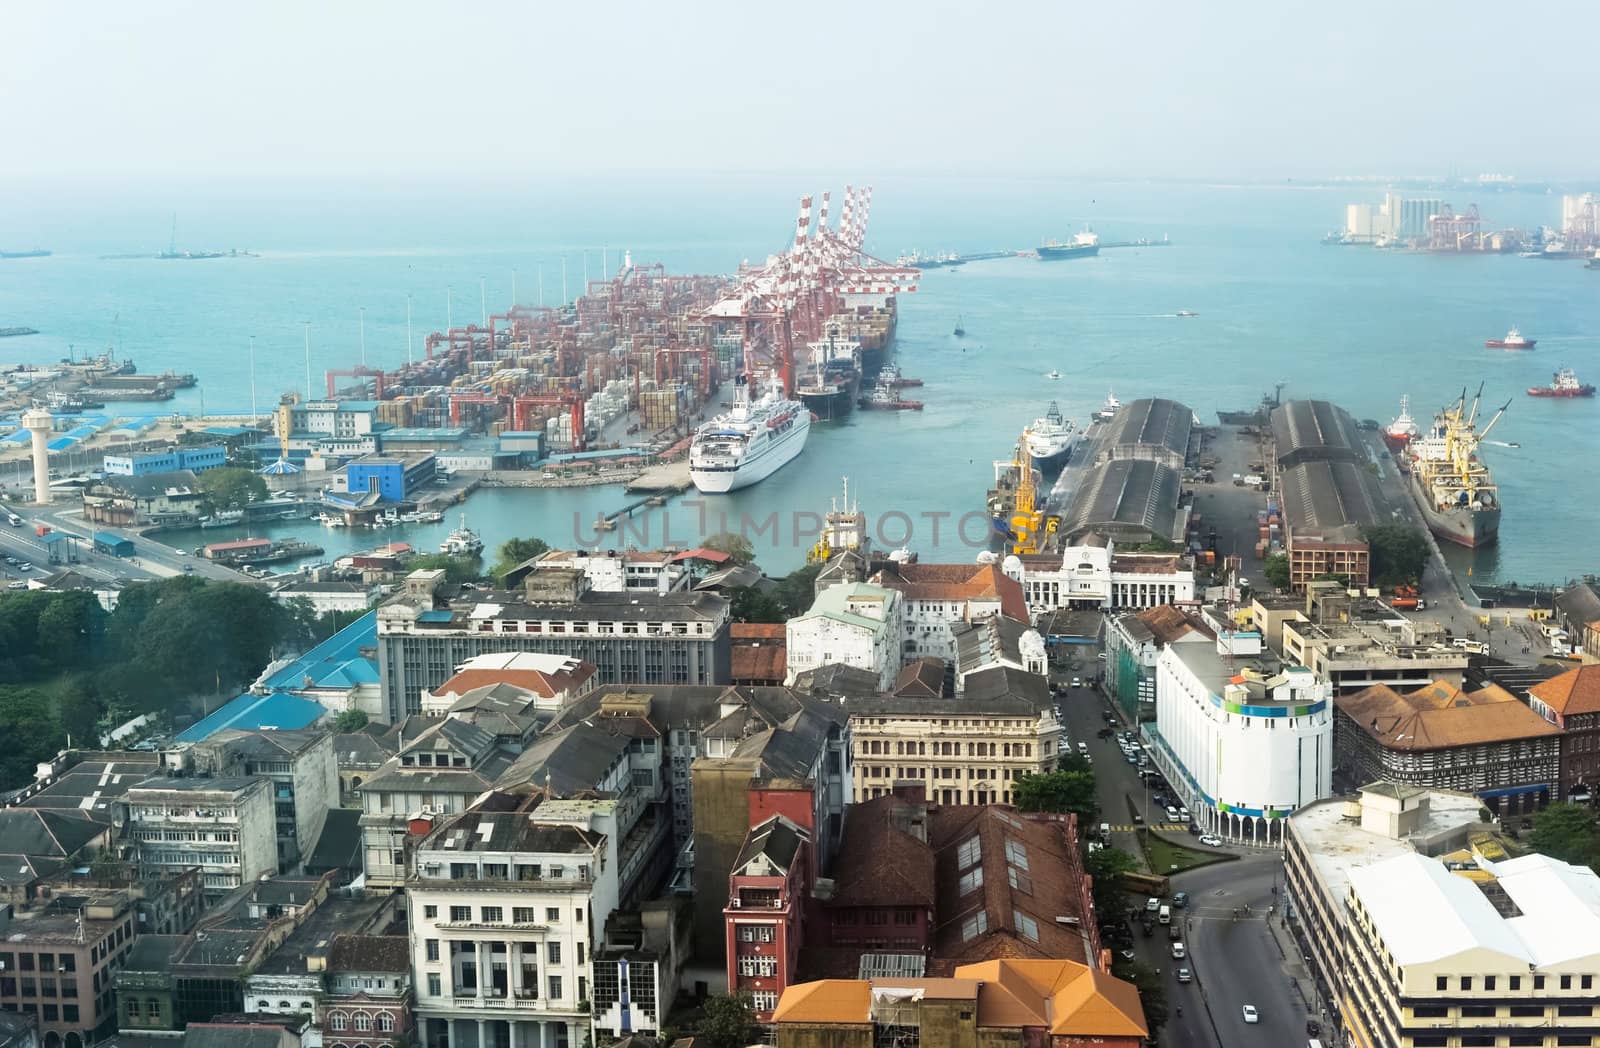 Colombo harbor by joyfull